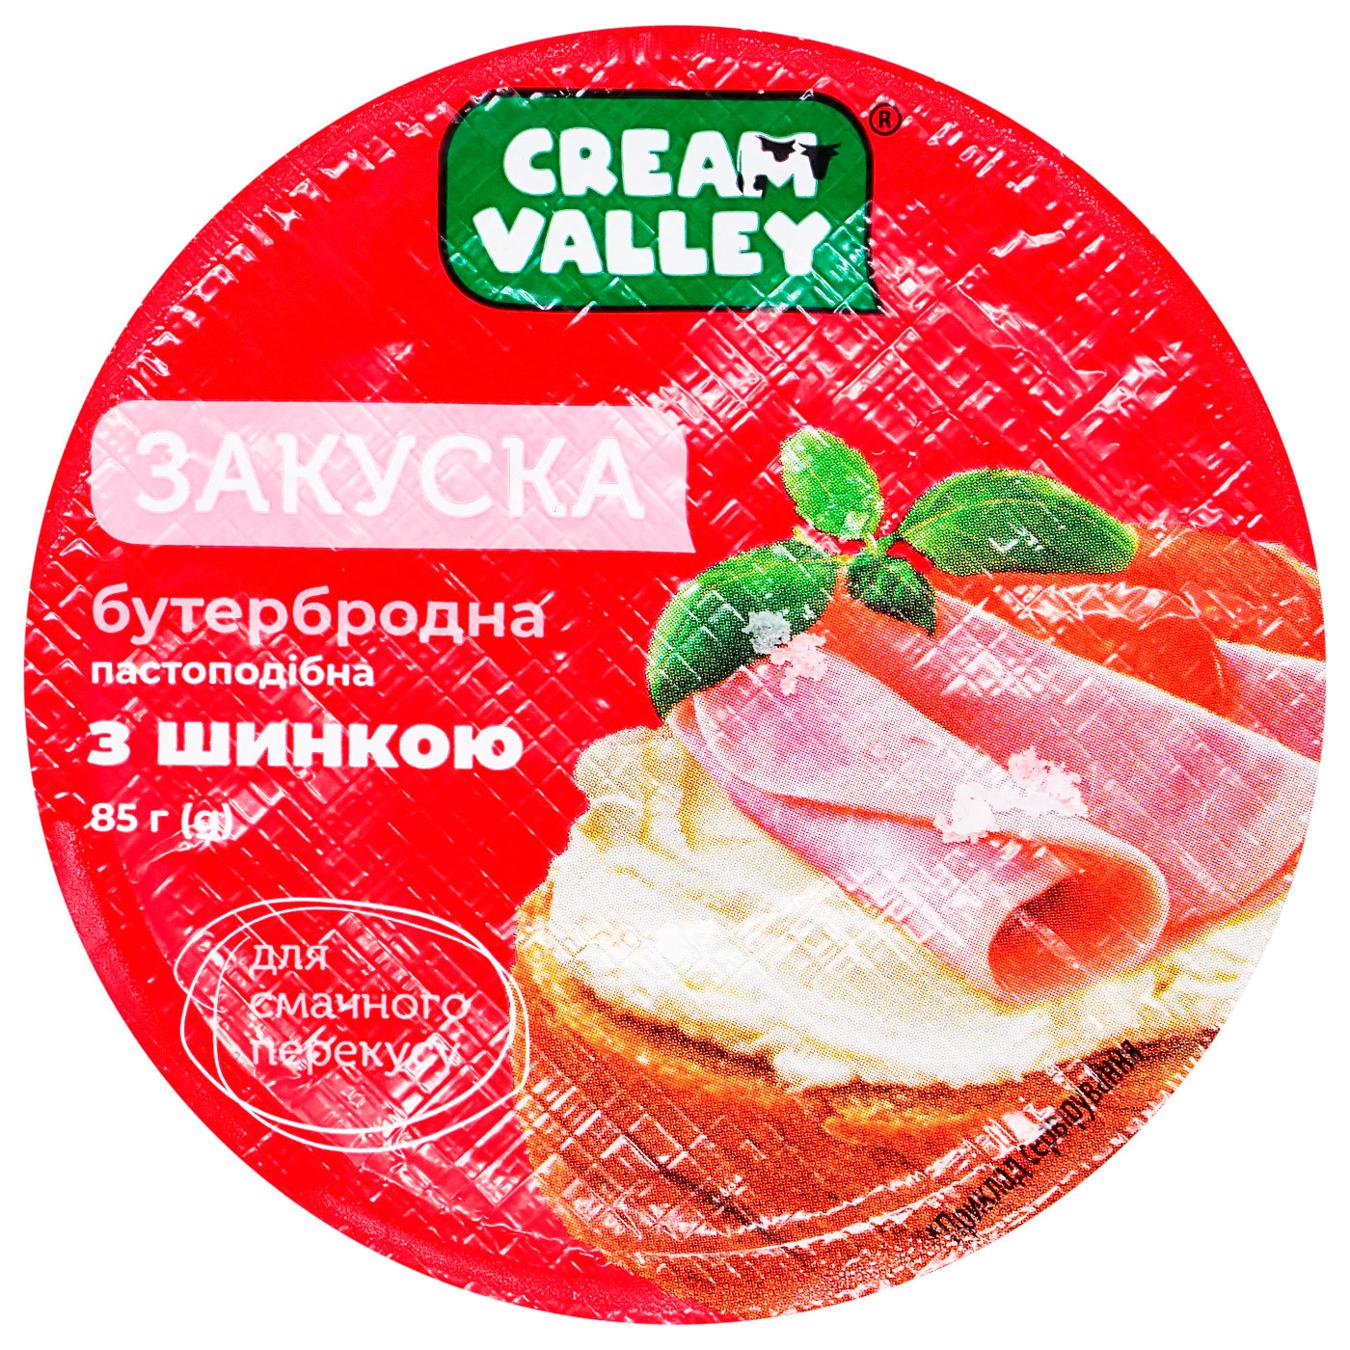 Закуска Cream Valley бутербродная с ветчиной 85г